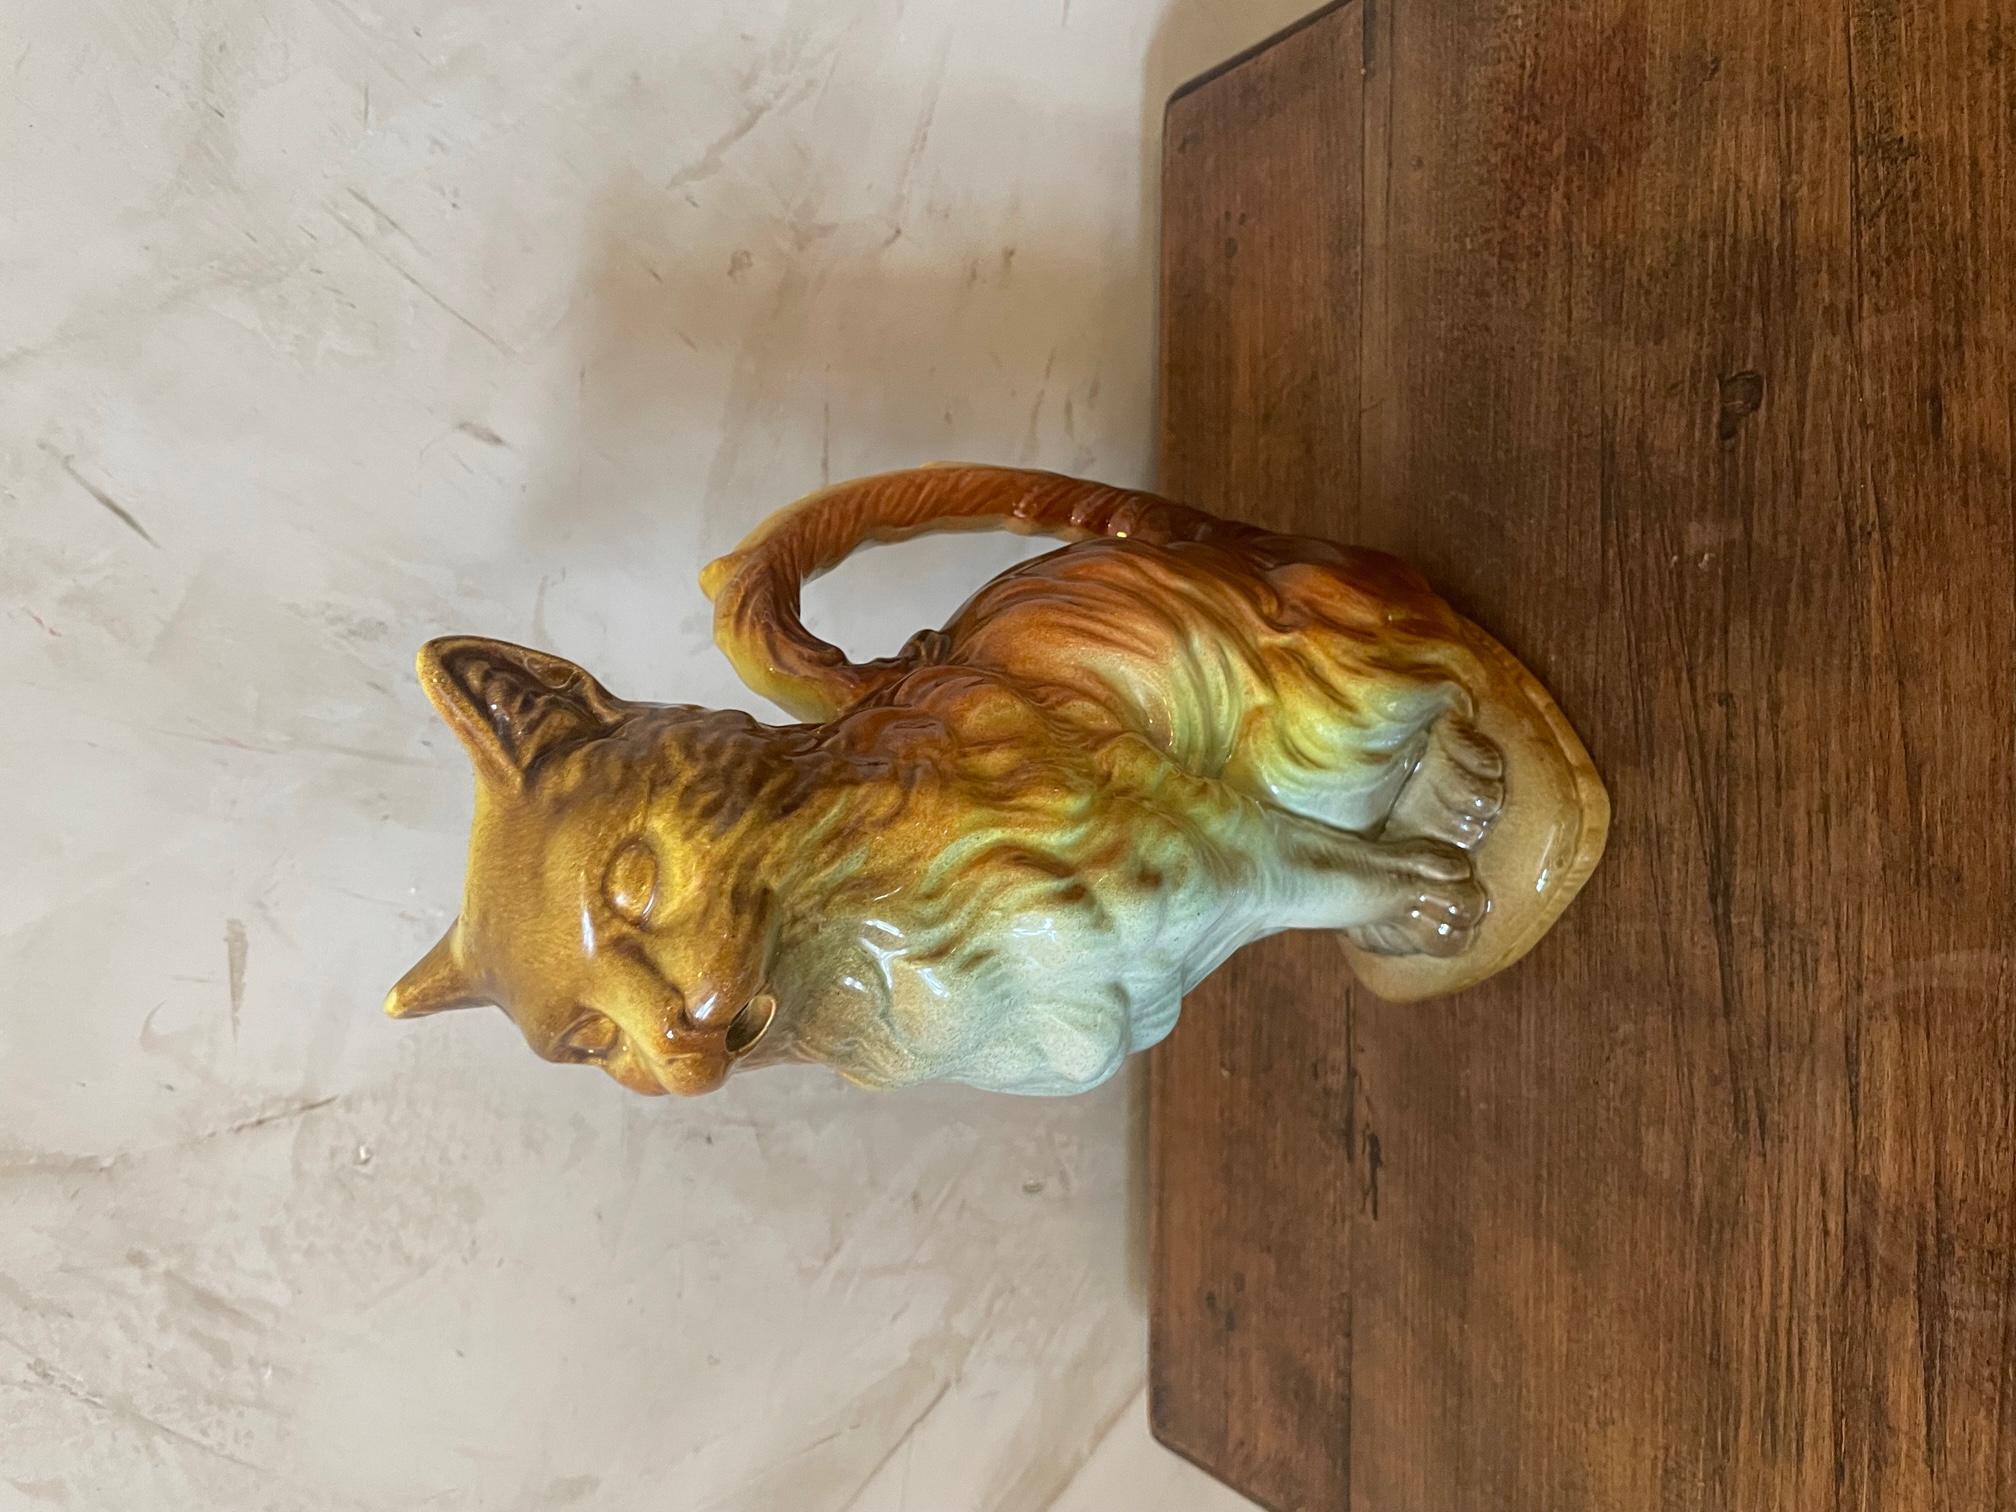 Sehr schöner französischer Keramikkrug Barbotine Cat aus dem 20. Jahrhundert. 
Gestempelt 7486 Frankreich unter. Braune und grüne Farben. 
Sehr guter Zustand.
 